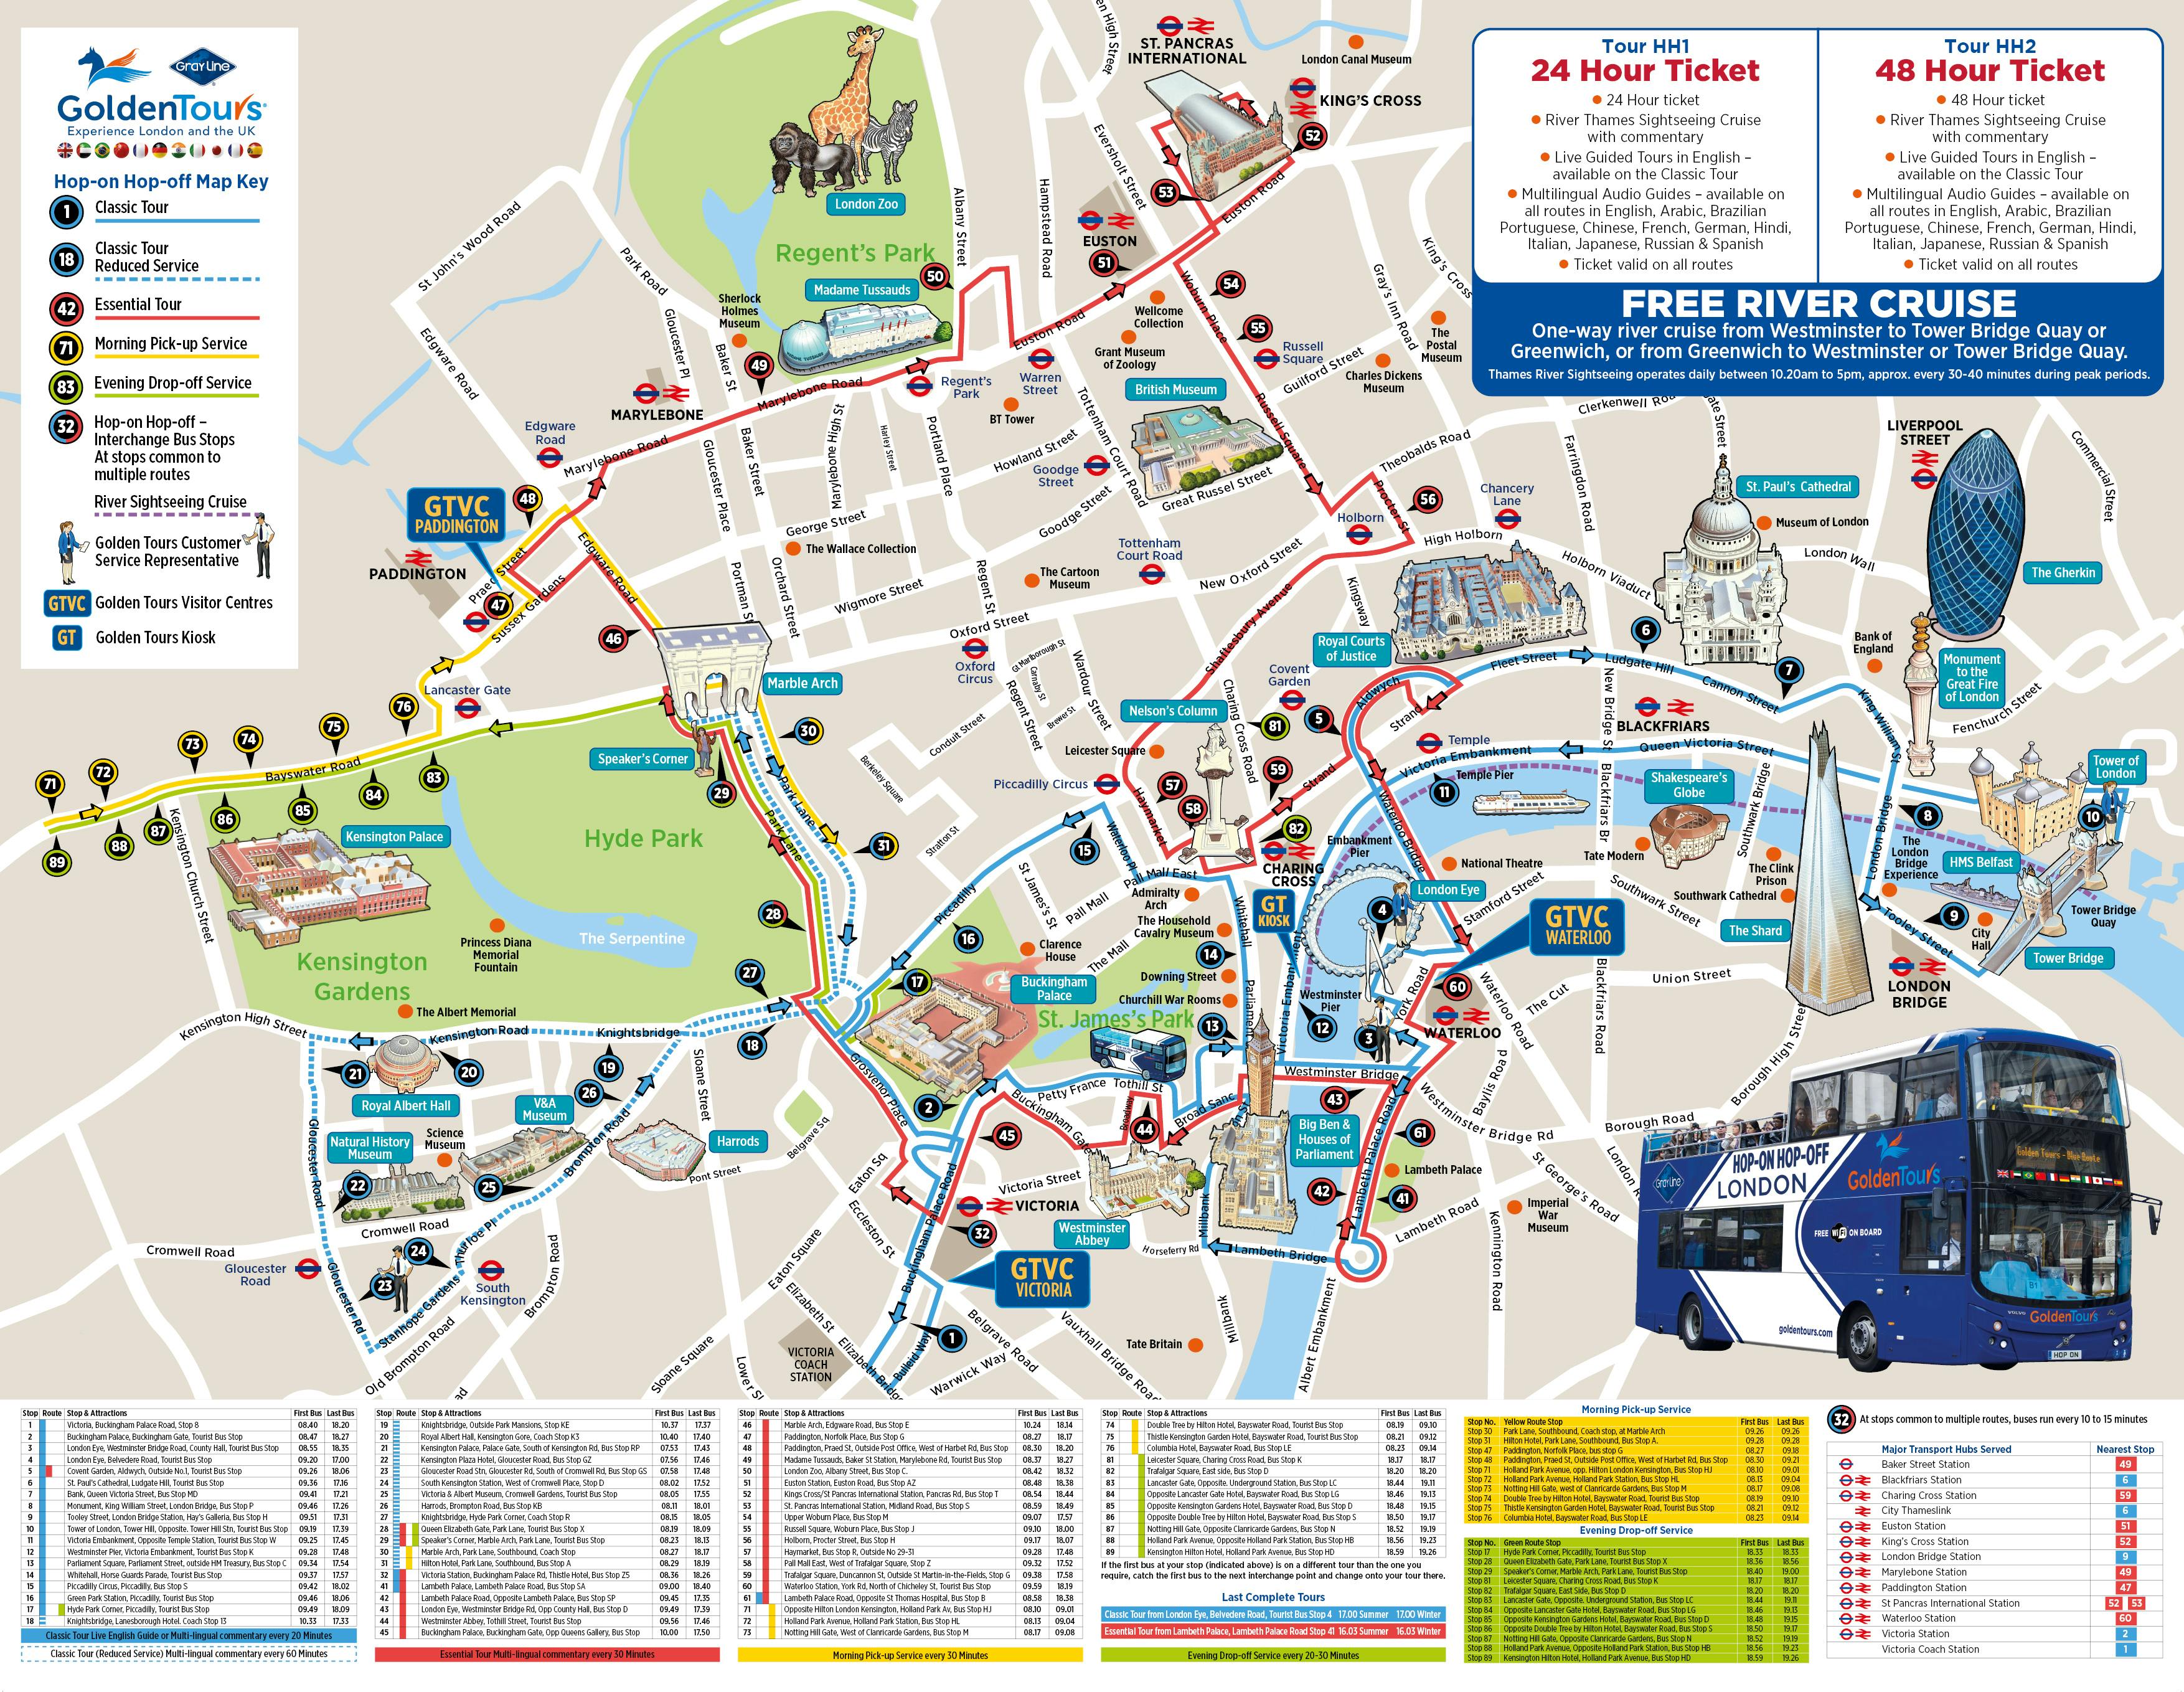 golden tour bus london map